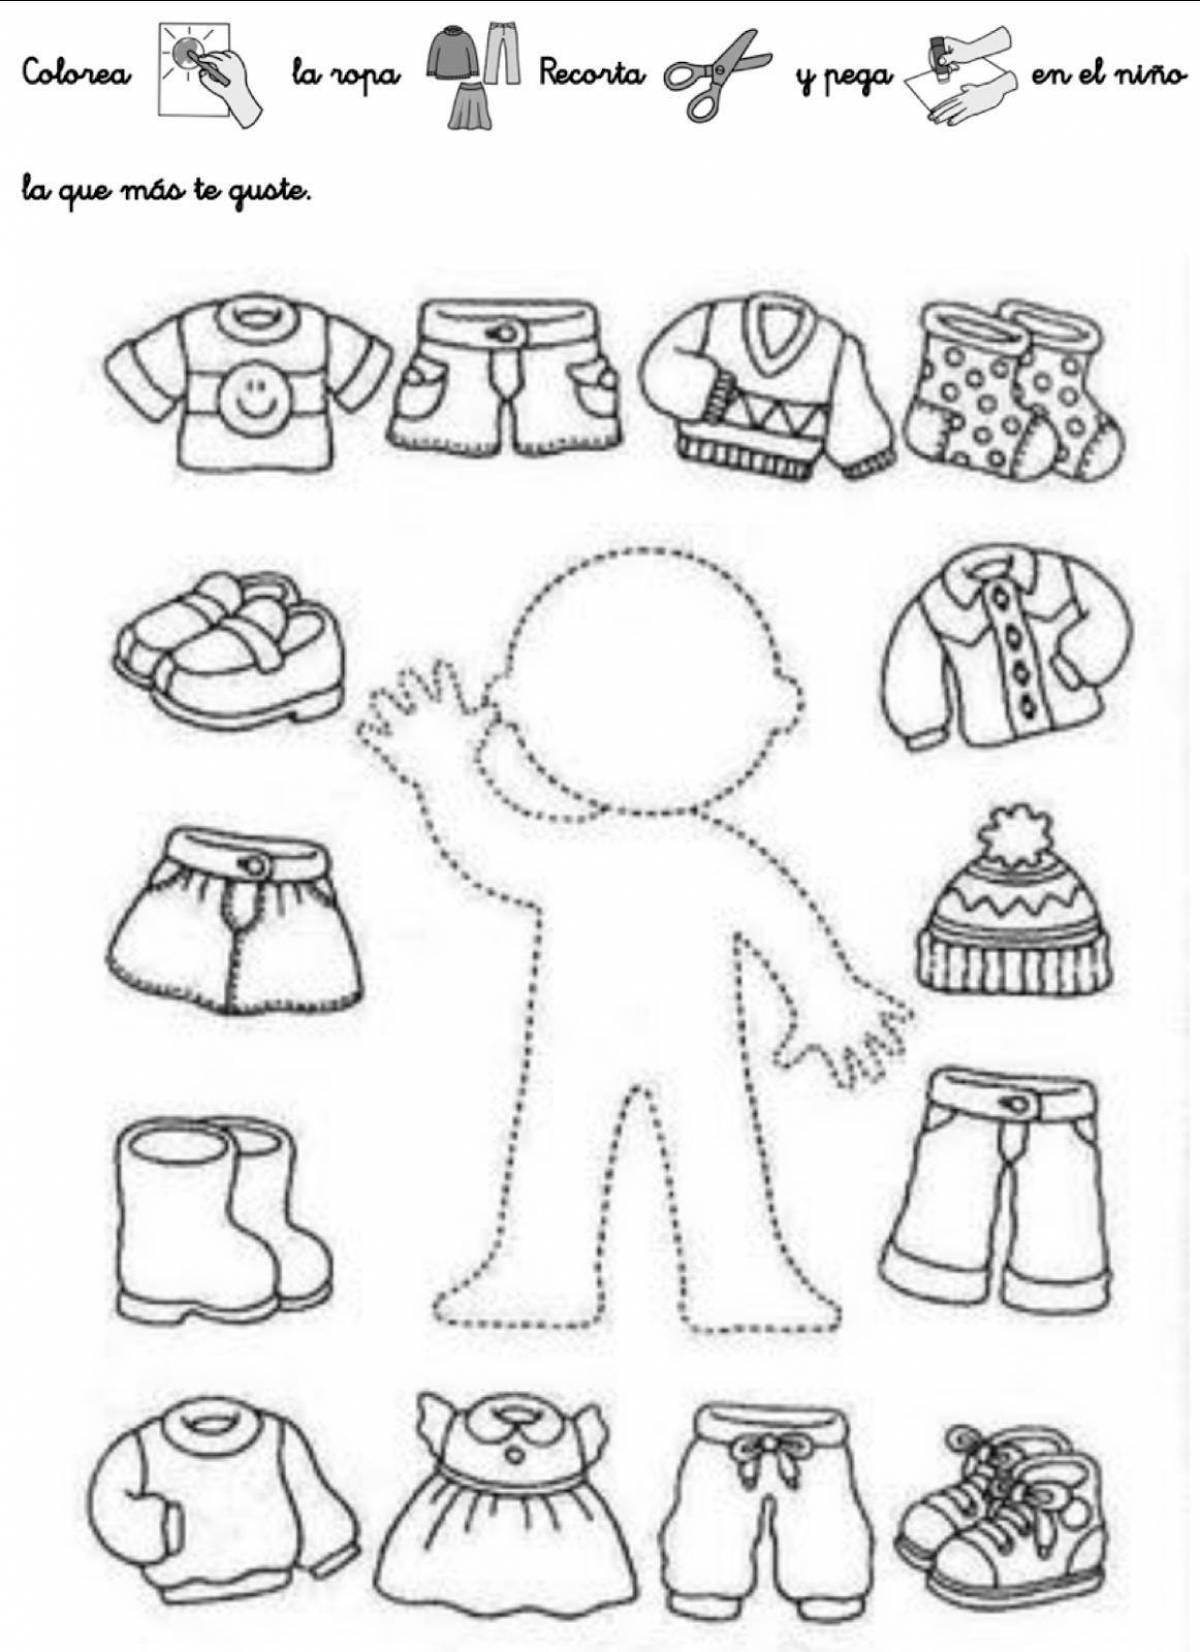 Забавная раскраска одежды для детей 4-5 лет